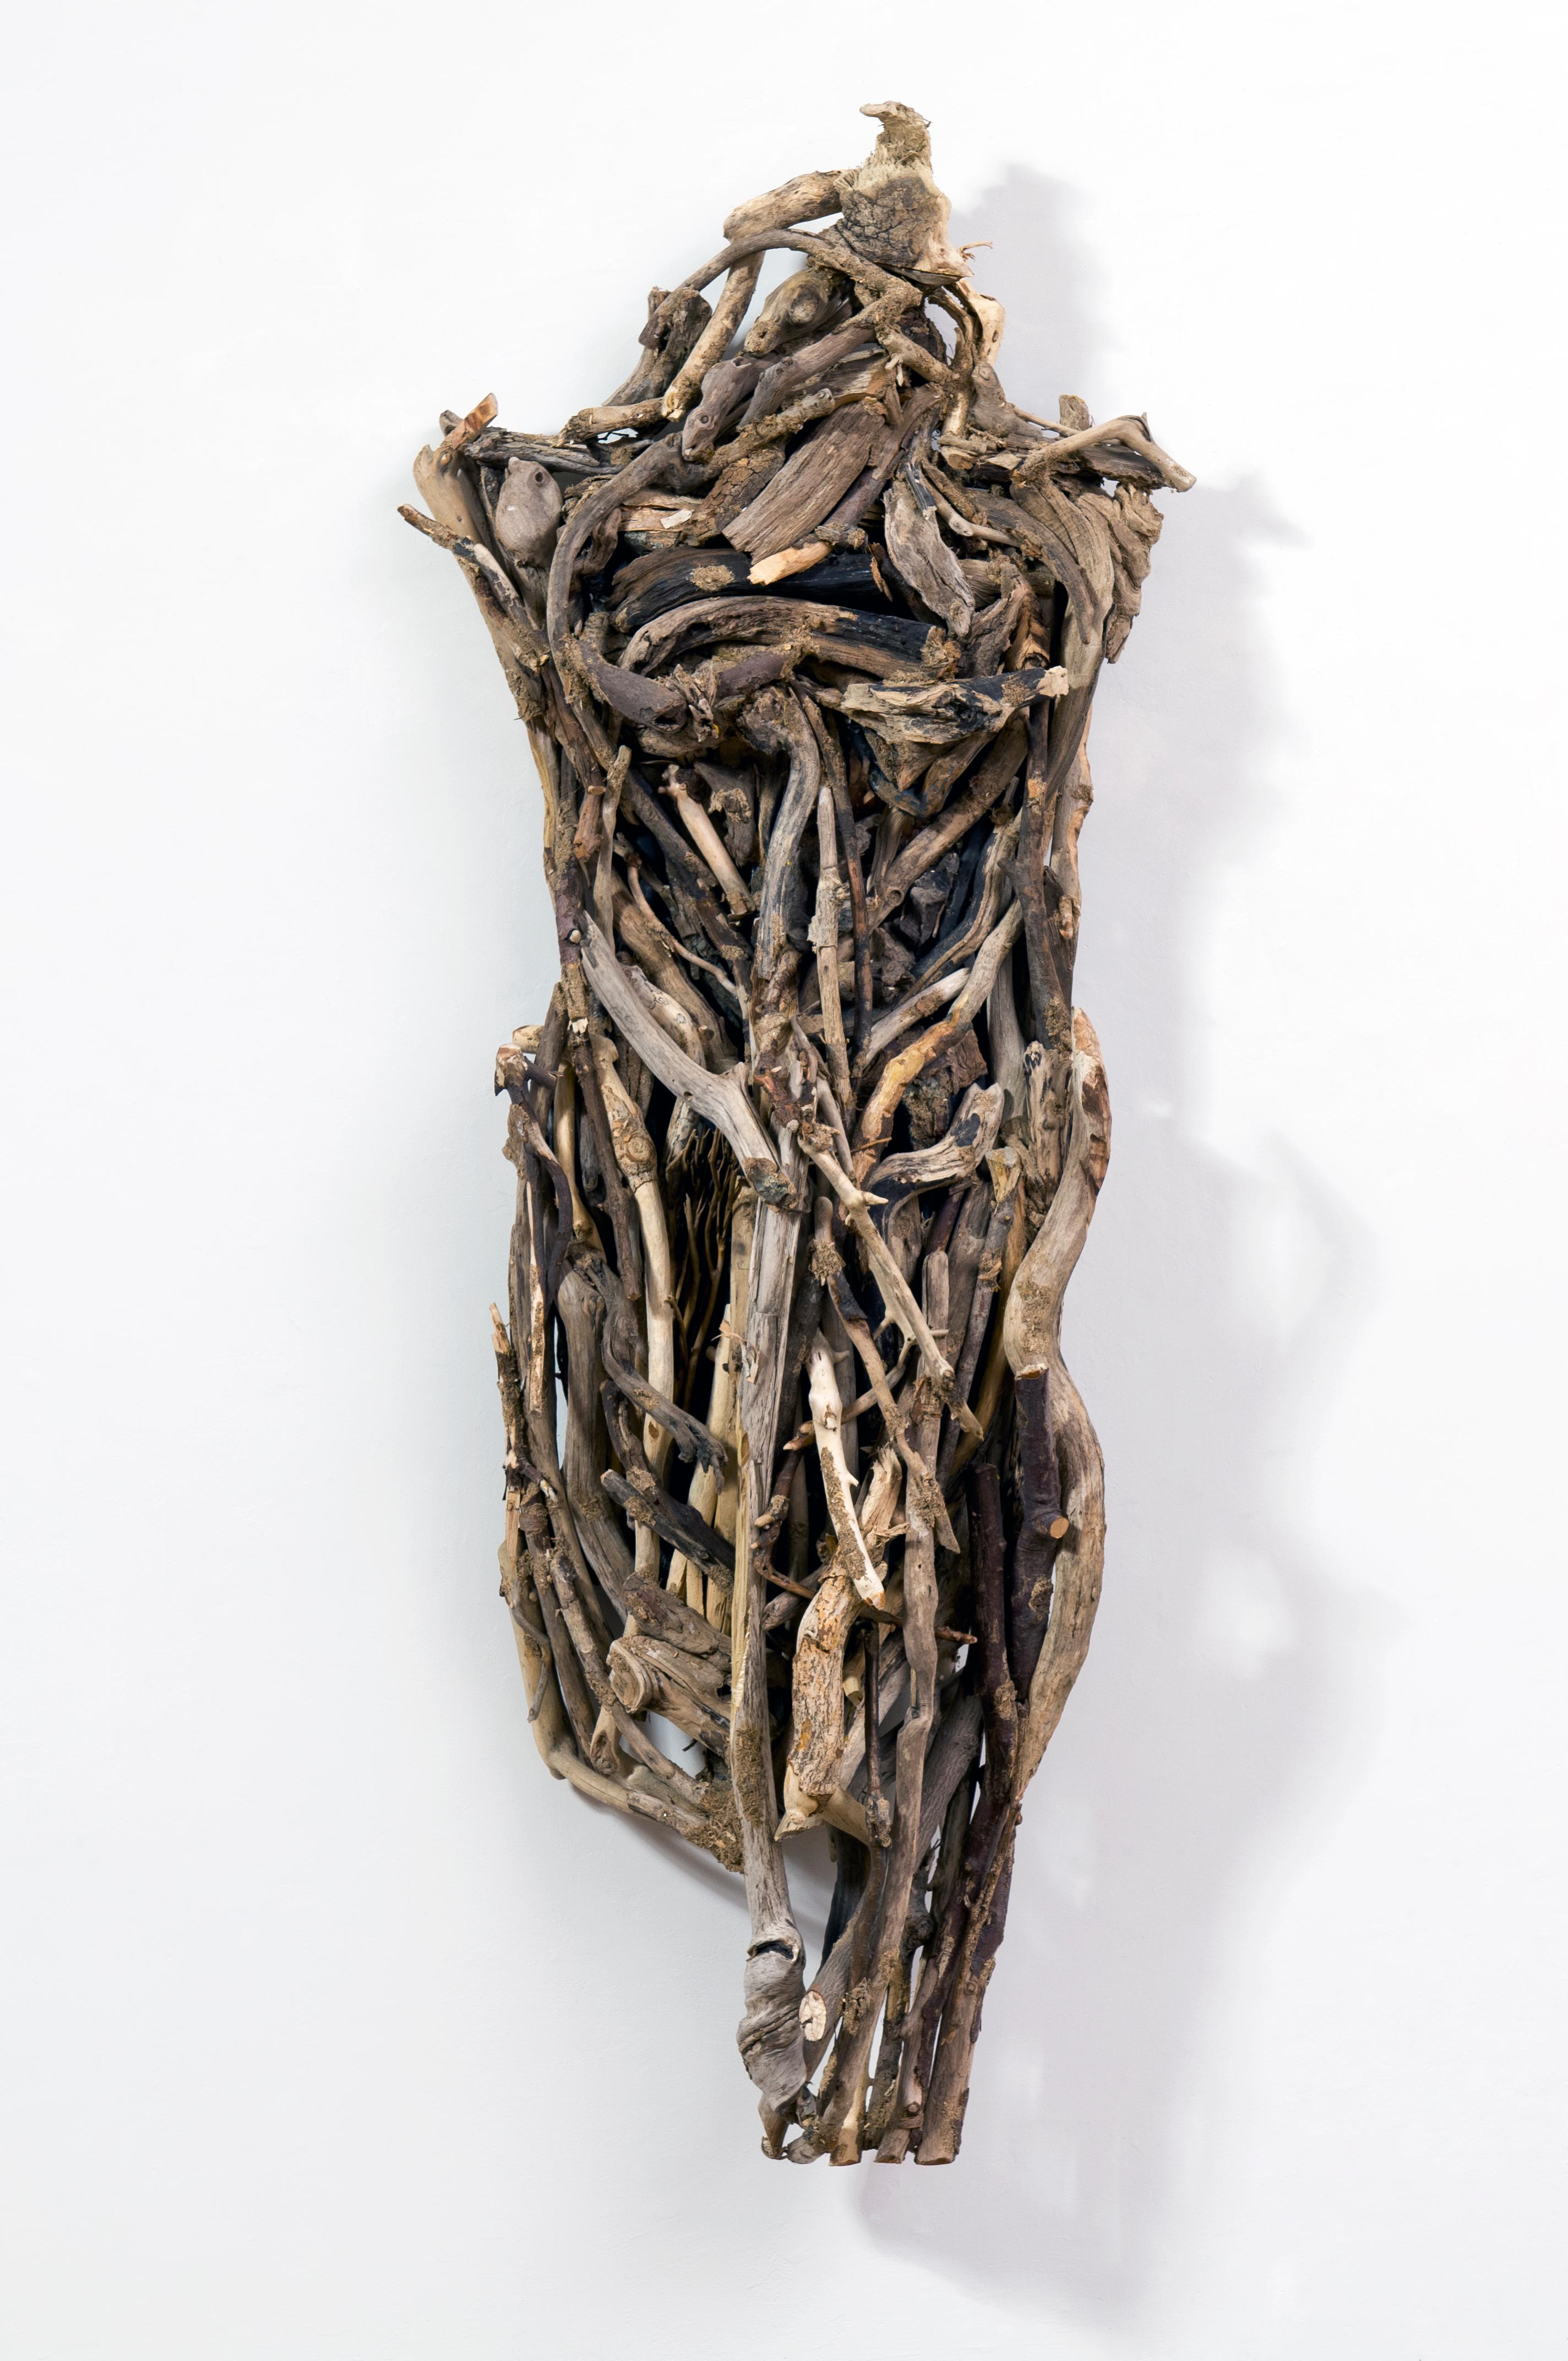 Cette sculpture de la série I am the Environment de Linda Stein explore la relation de l'artiste avec la terre et traite de l'interconnexion de tous les êtres vivants.

Les œuvres de Stein figurent dans plus de 25 collections permanentes de musées,